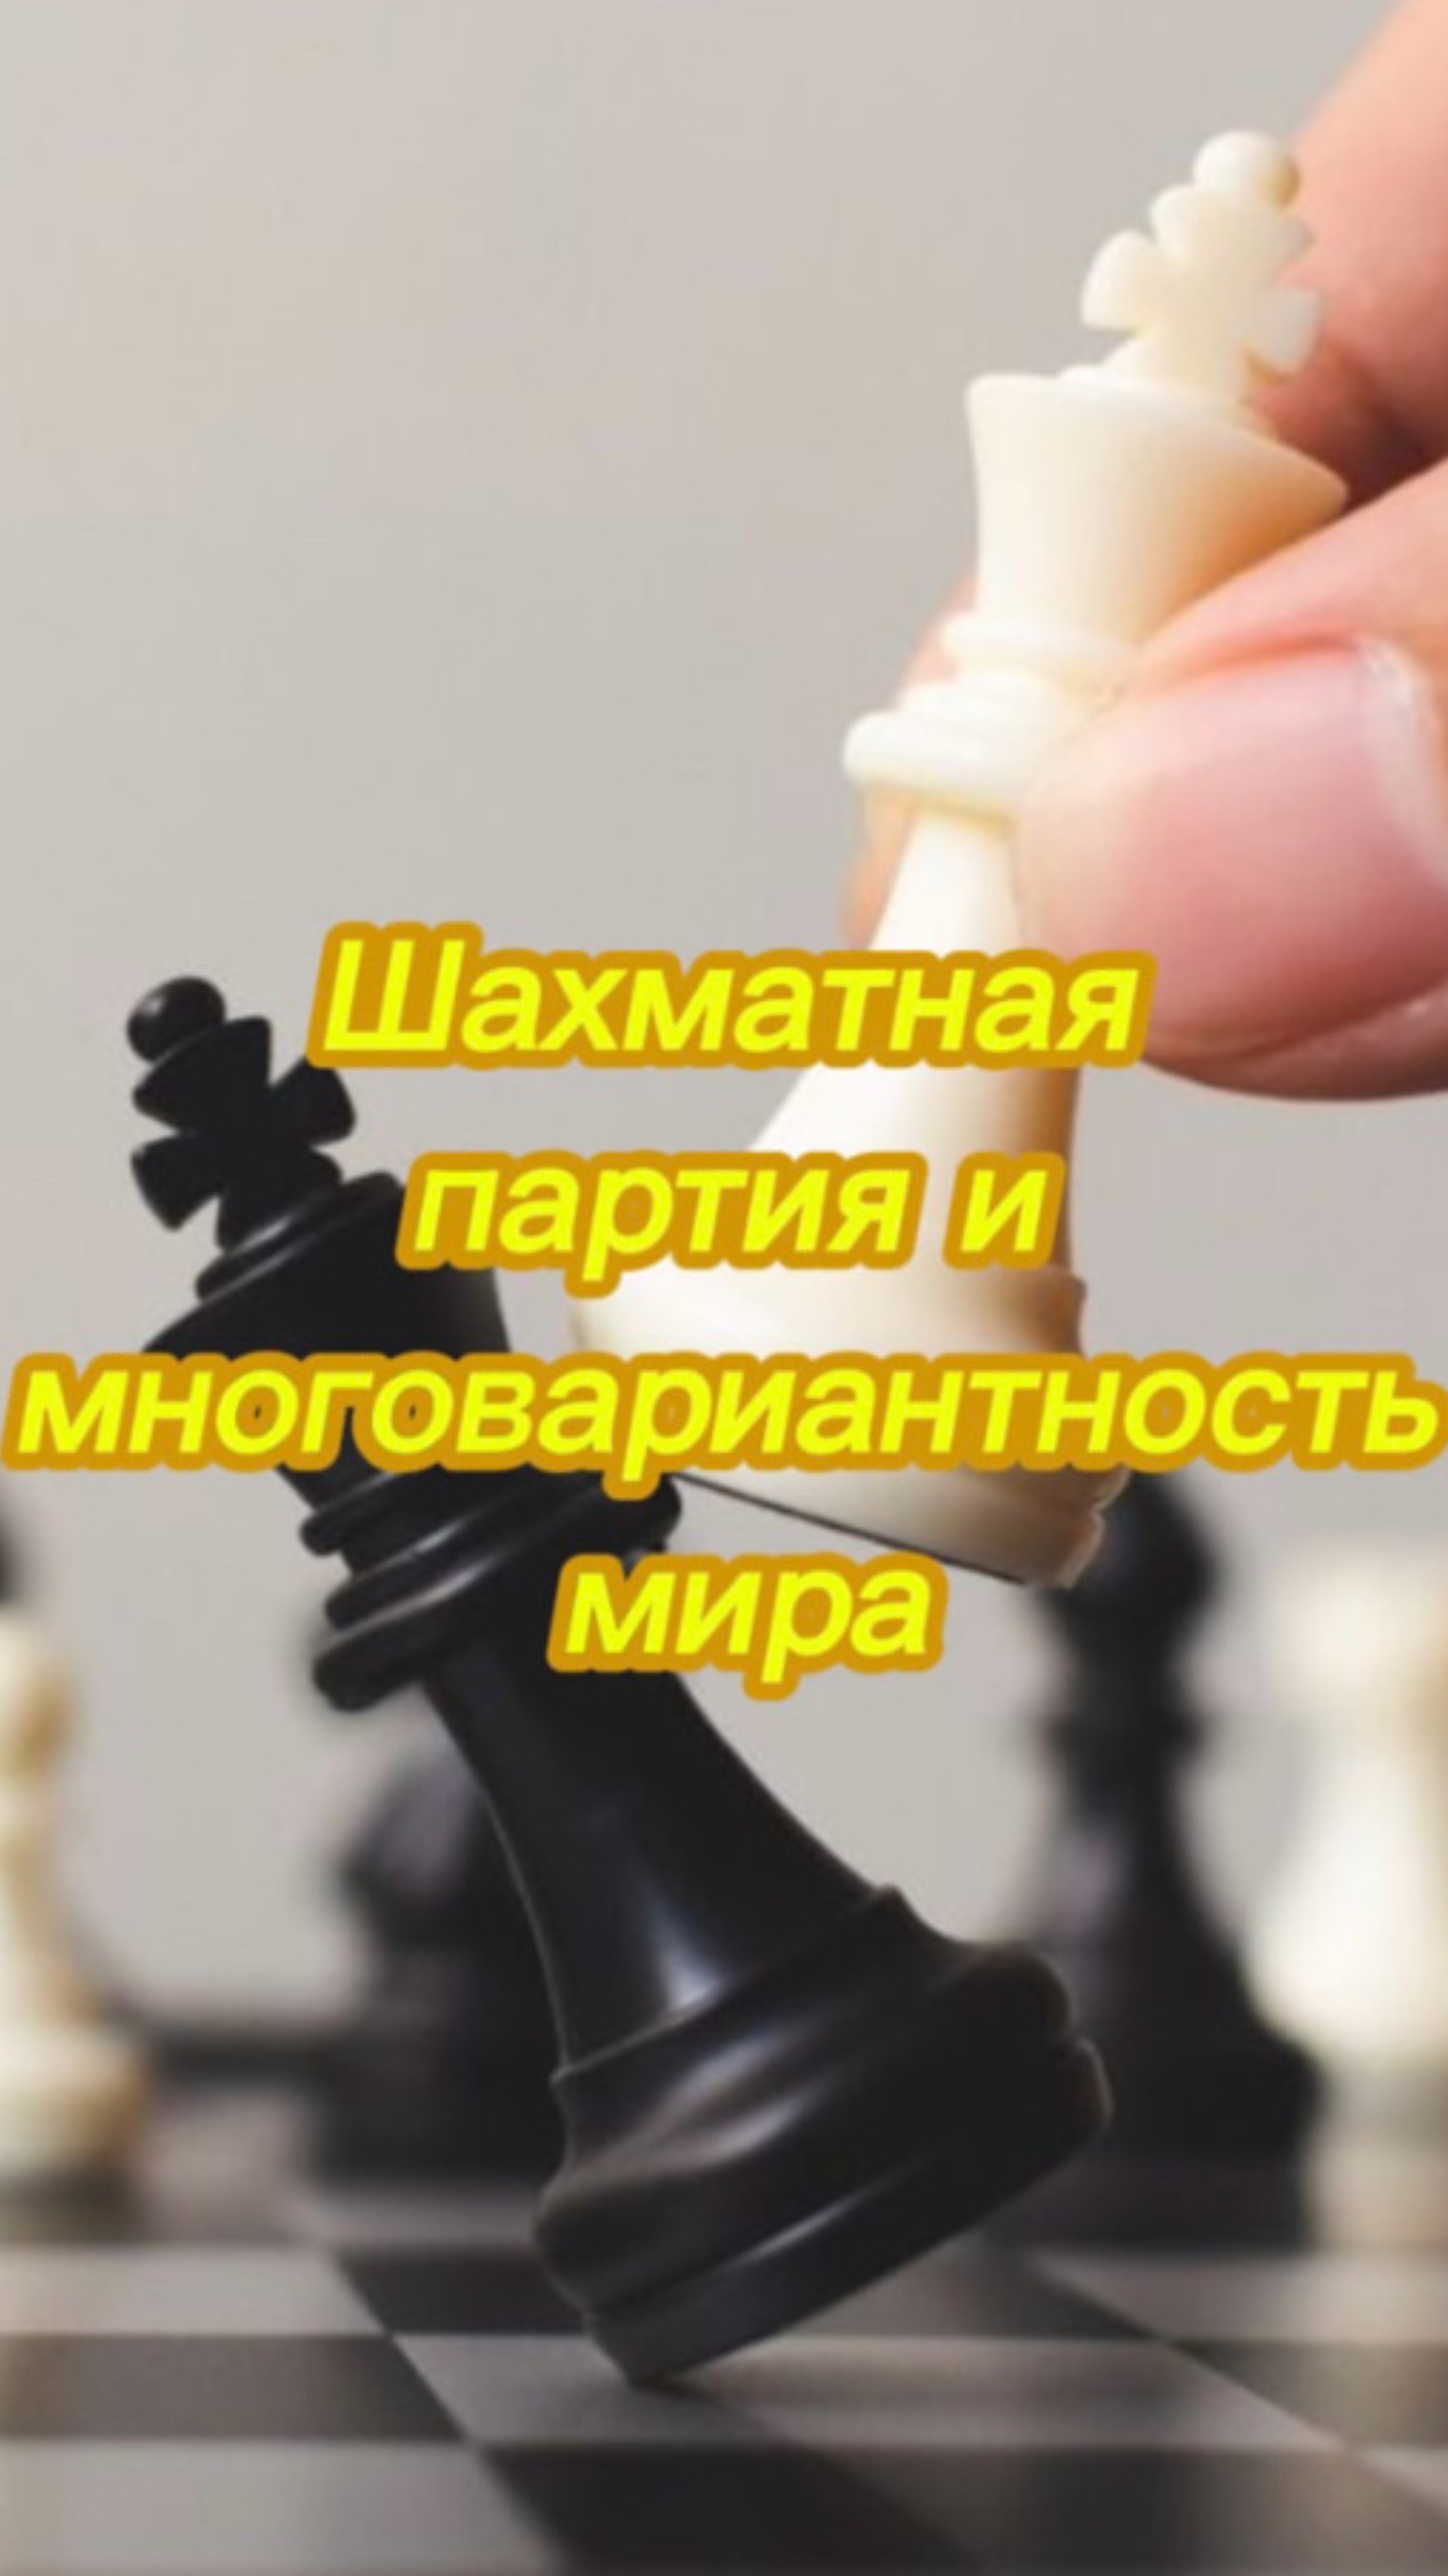 Шахматная партия и многовариантность мира